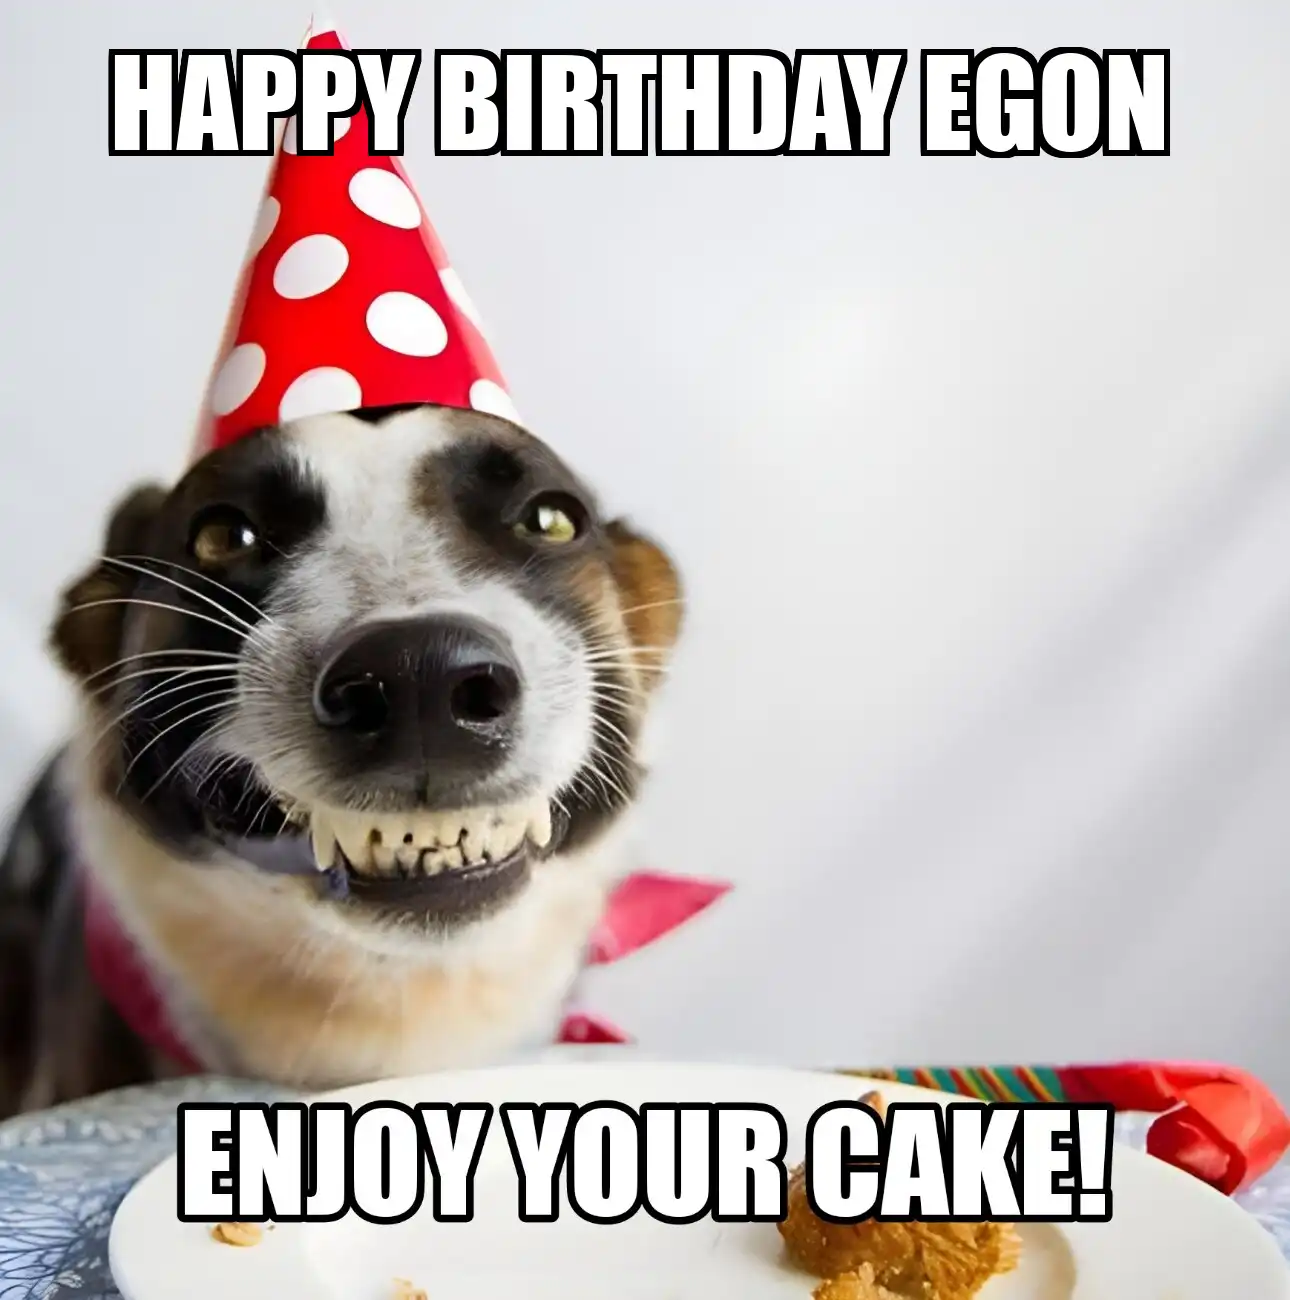 Happy Birthday Egon Enjoy Your Cake Dog Meme